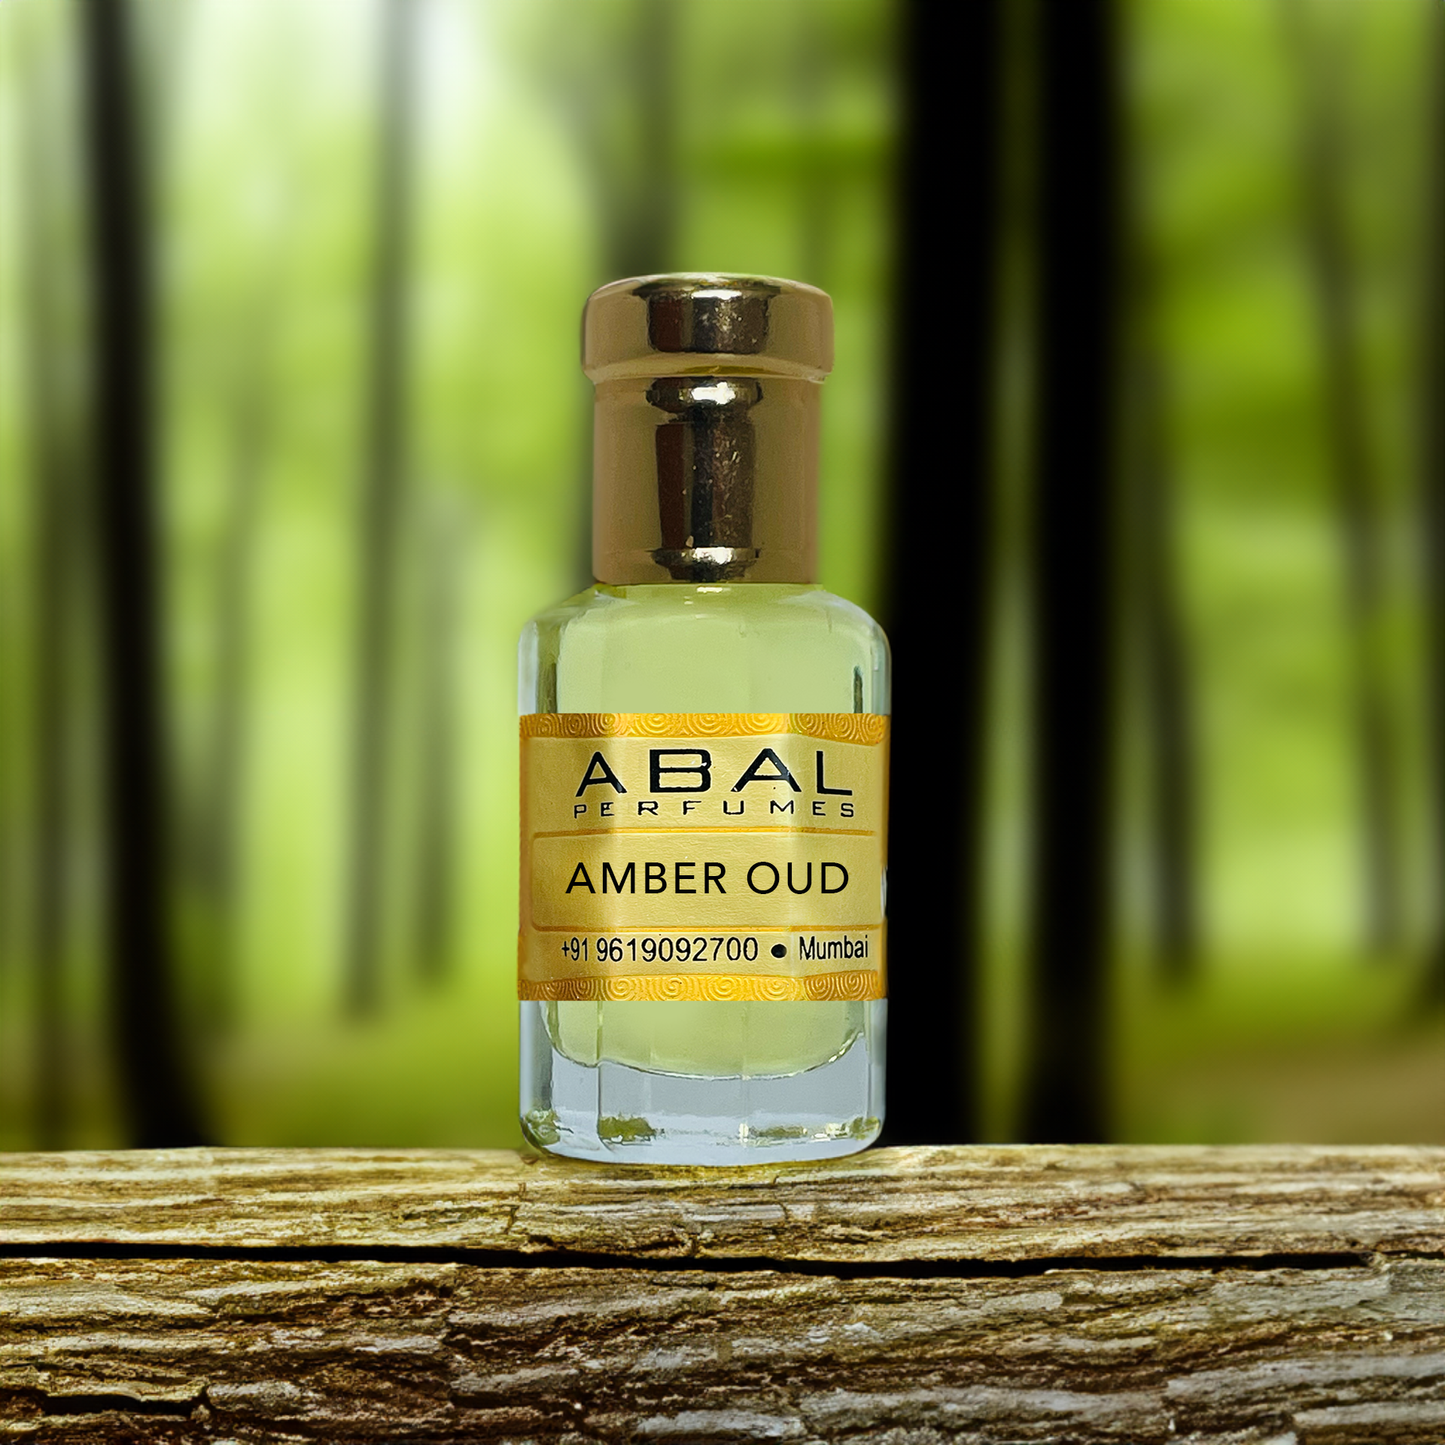     Amber Oud-Premium Attar